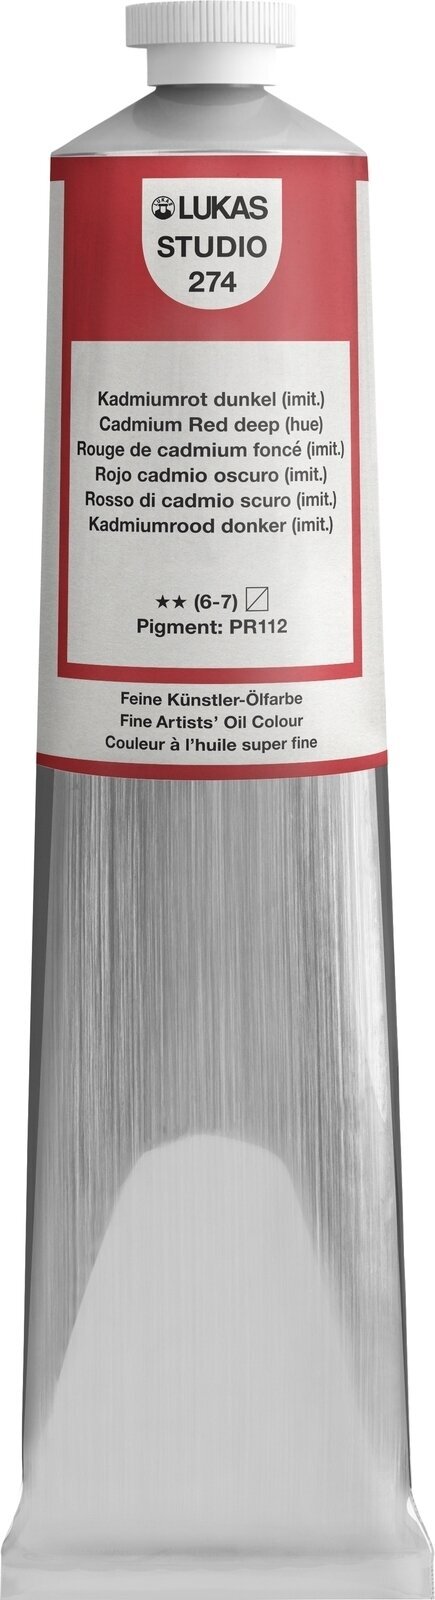 Ölfarbe Lukas Studio Oil Paint Aluminium Tube Ölgemälde Cadmium Red Deep Hue 200 ml 1 Stck